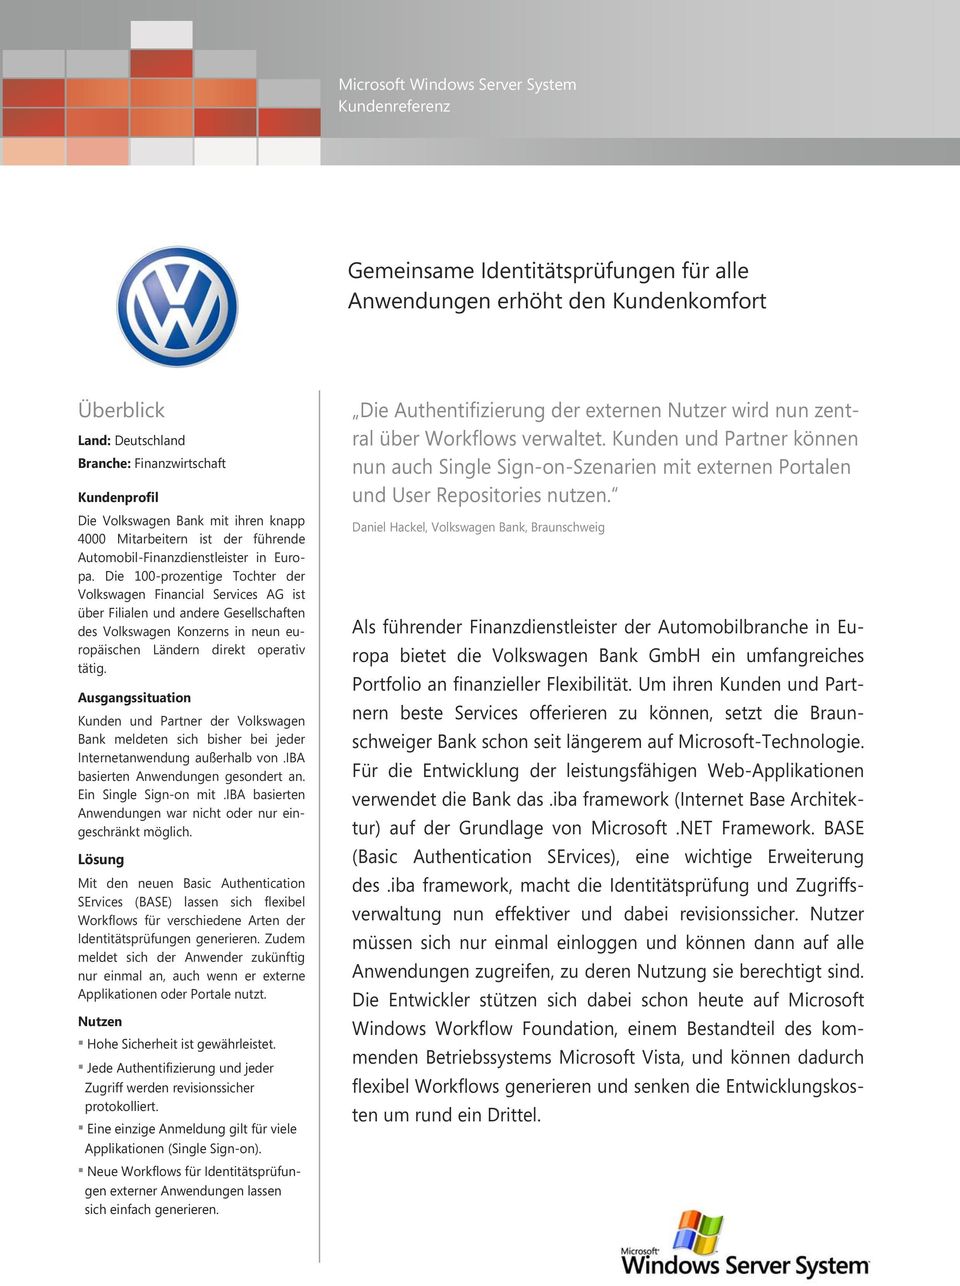 Die 100-prozentige Tochter der Volkswagen Financial Services AG ist über Filialen und andere Gesellschaften des Volkswagen Konzerns in neun europäischen Ländern direkt operativ tätig.